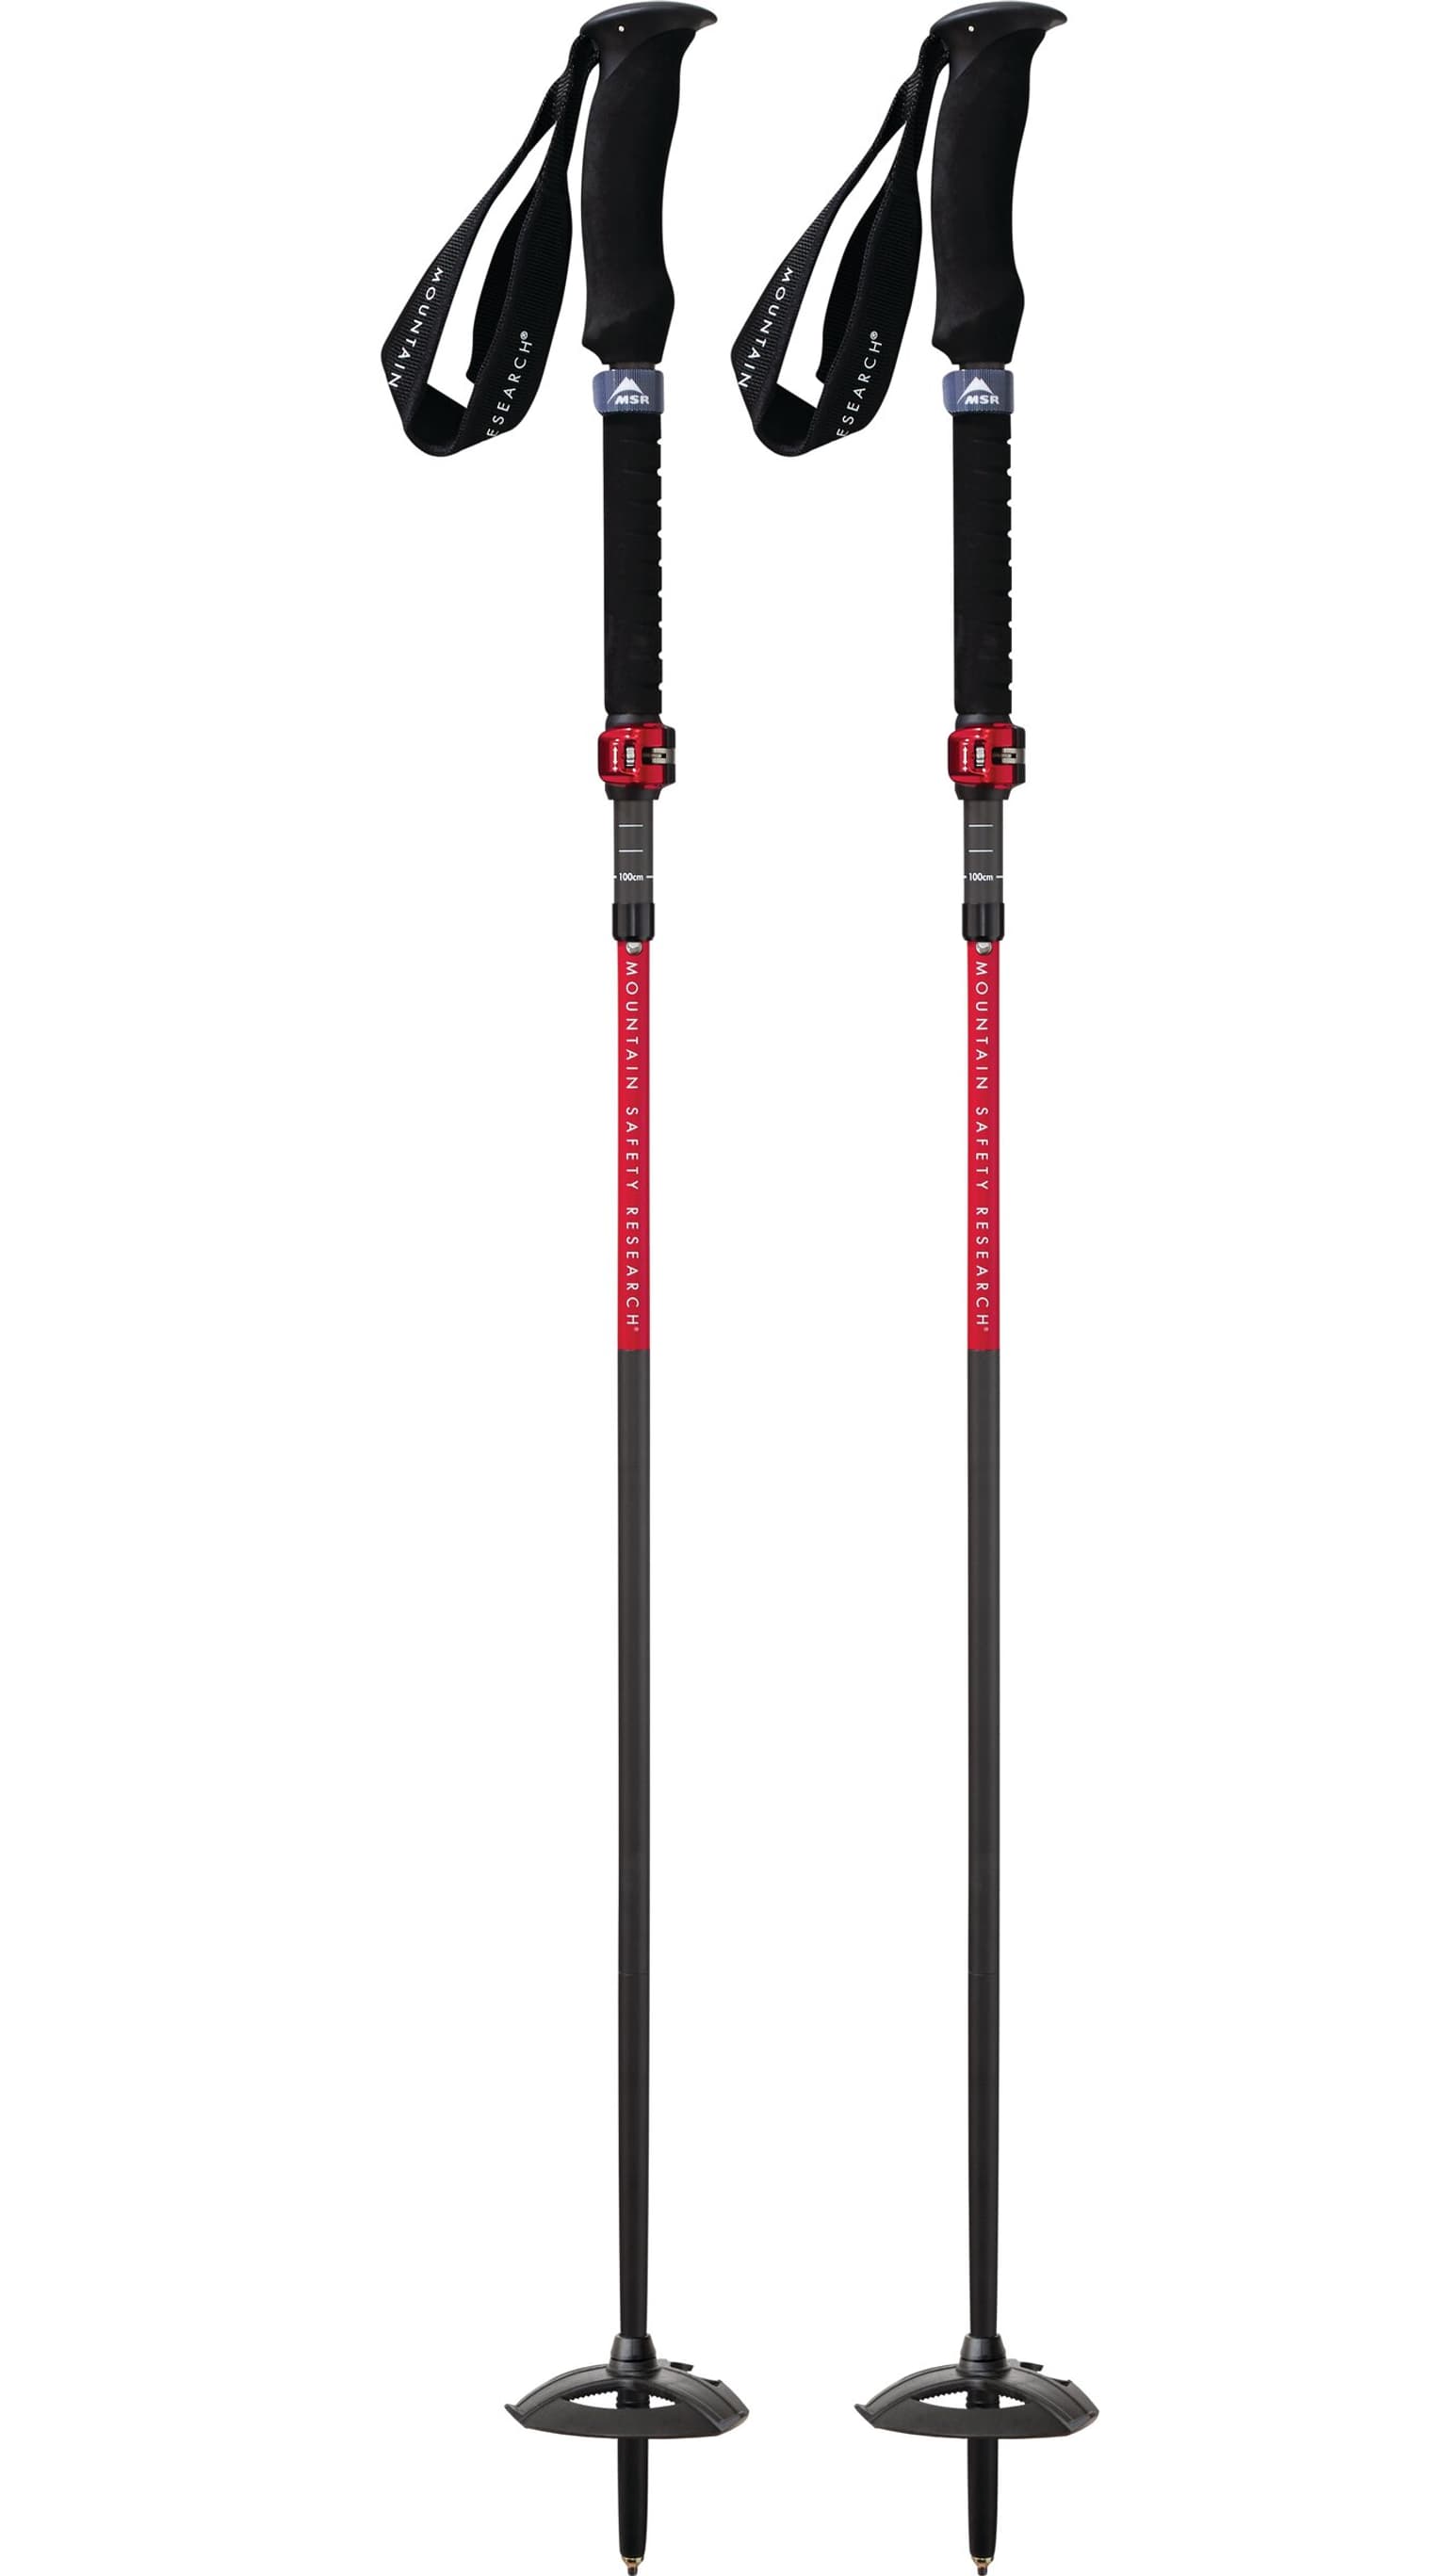 MSR MSR Dynalock Ascent Carbon 100 - 120 cm Bâton de randonnée raquette à neige 1